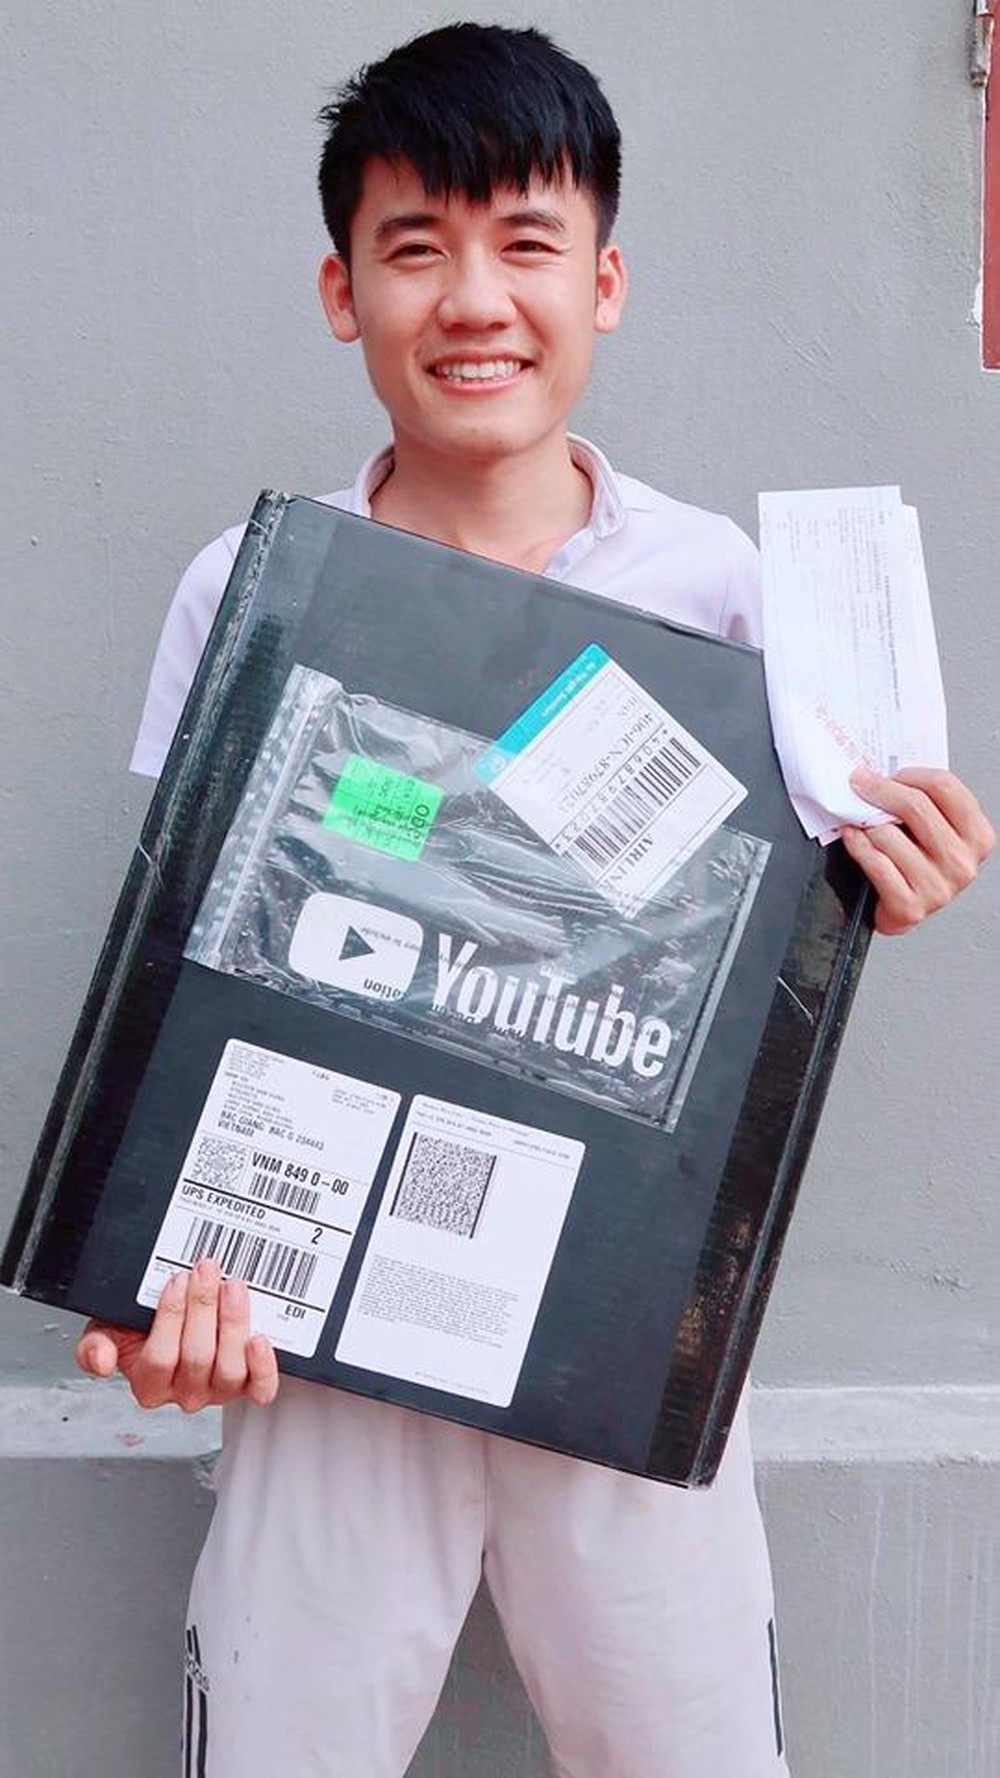  
Sau 2 năm gắn bó, tháng 4 vừa qua, Hưng Vlog vinh dự được nhận nút vàng của Youtube.